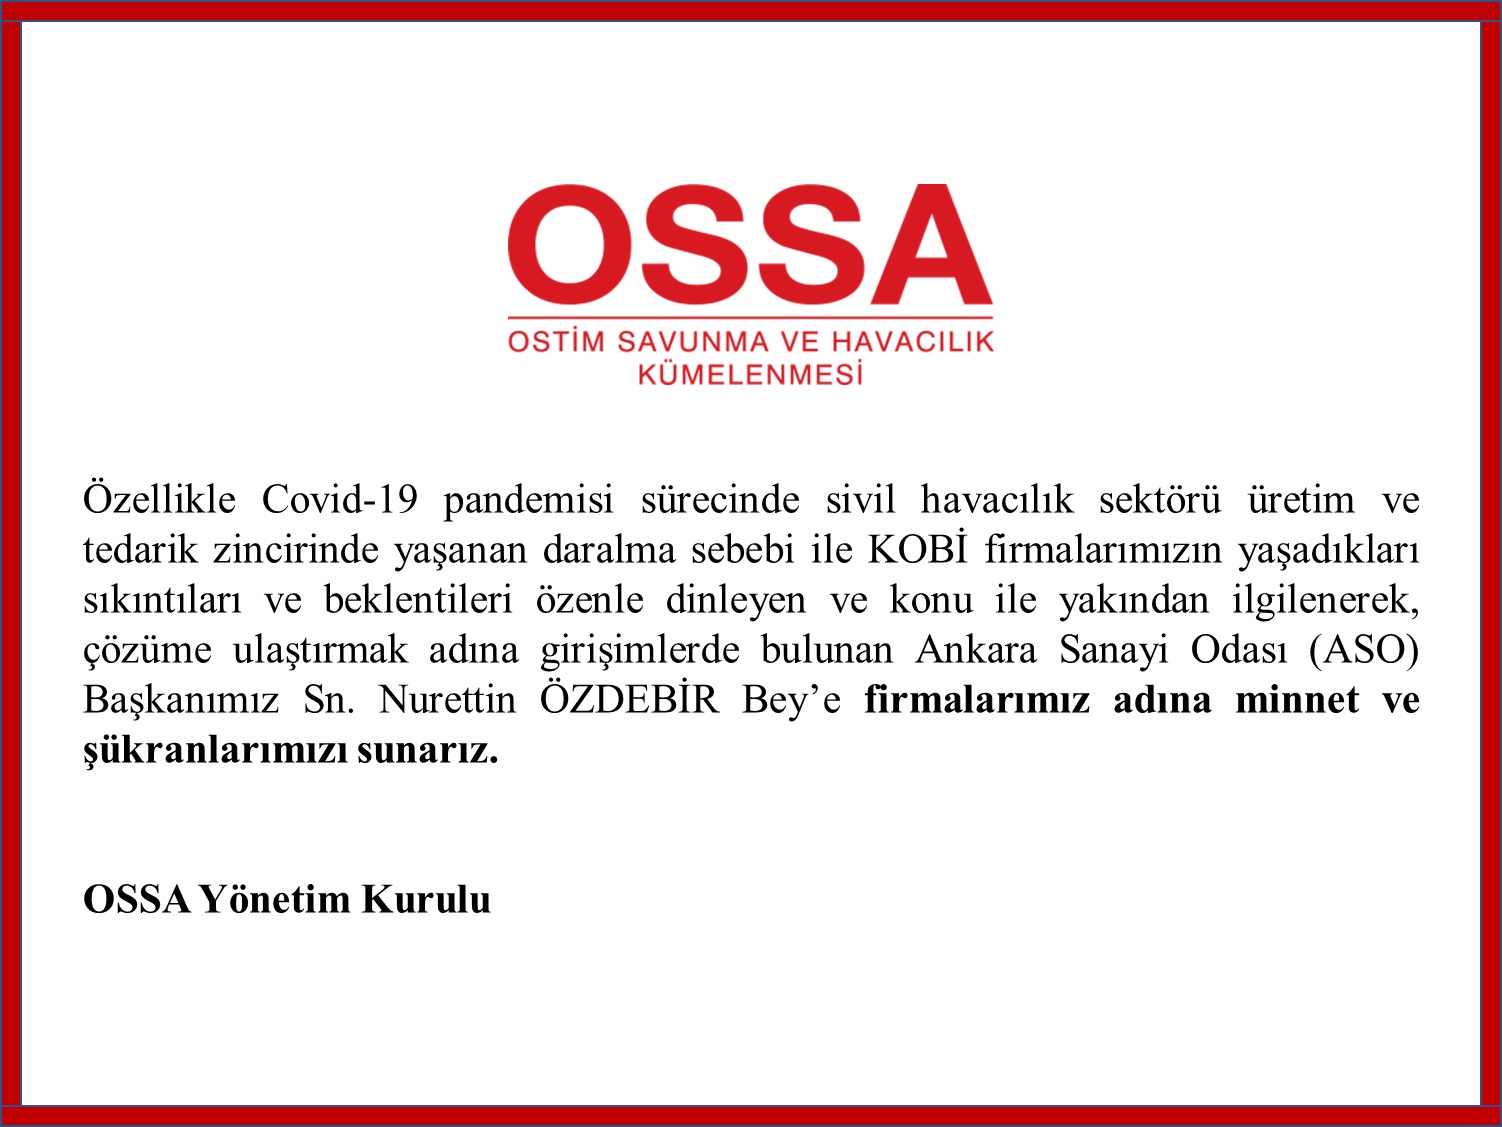 Ankara Sanayi Odası (ASO) Başkanımız Sn. Nurettin Özdebir Bey'e Teşekkürlerimizle...